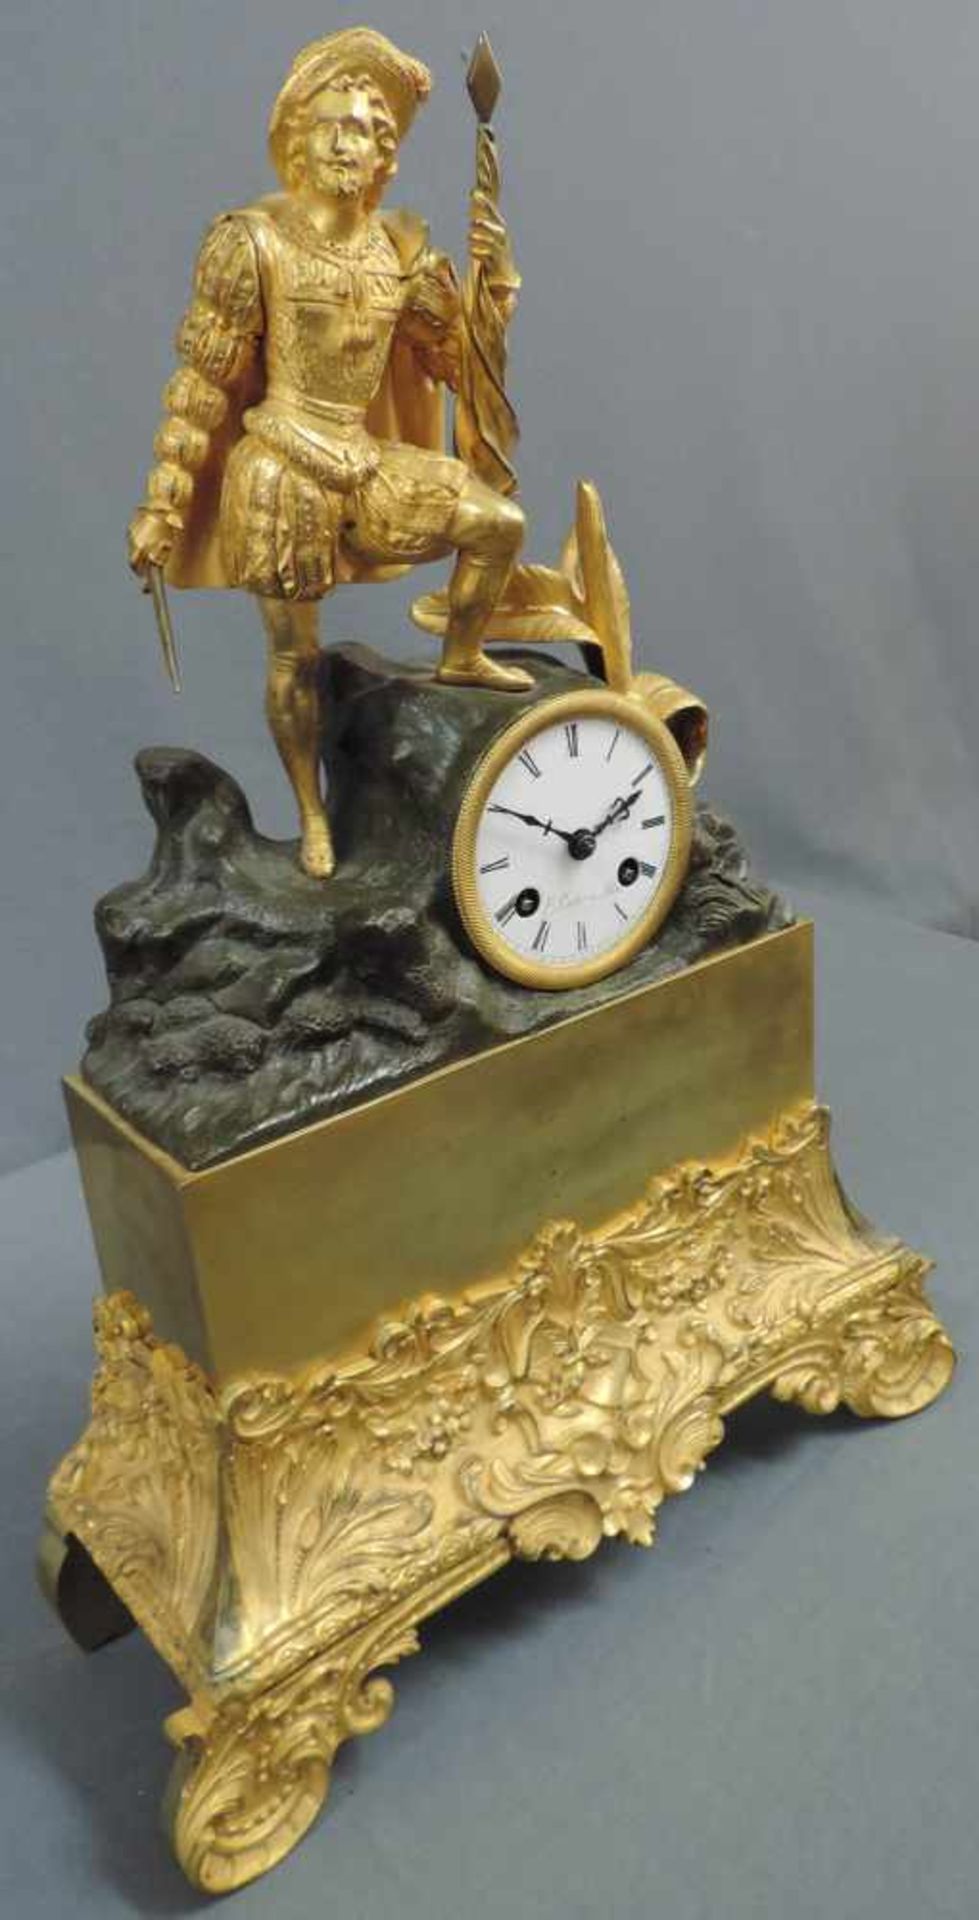 Prunkvolle Kaminuhr, 19. Jahrhundert 44 cm x 31 cm. Metallfigur mit integrierter Uhr zum aufziehen - Bild 5 aus 8